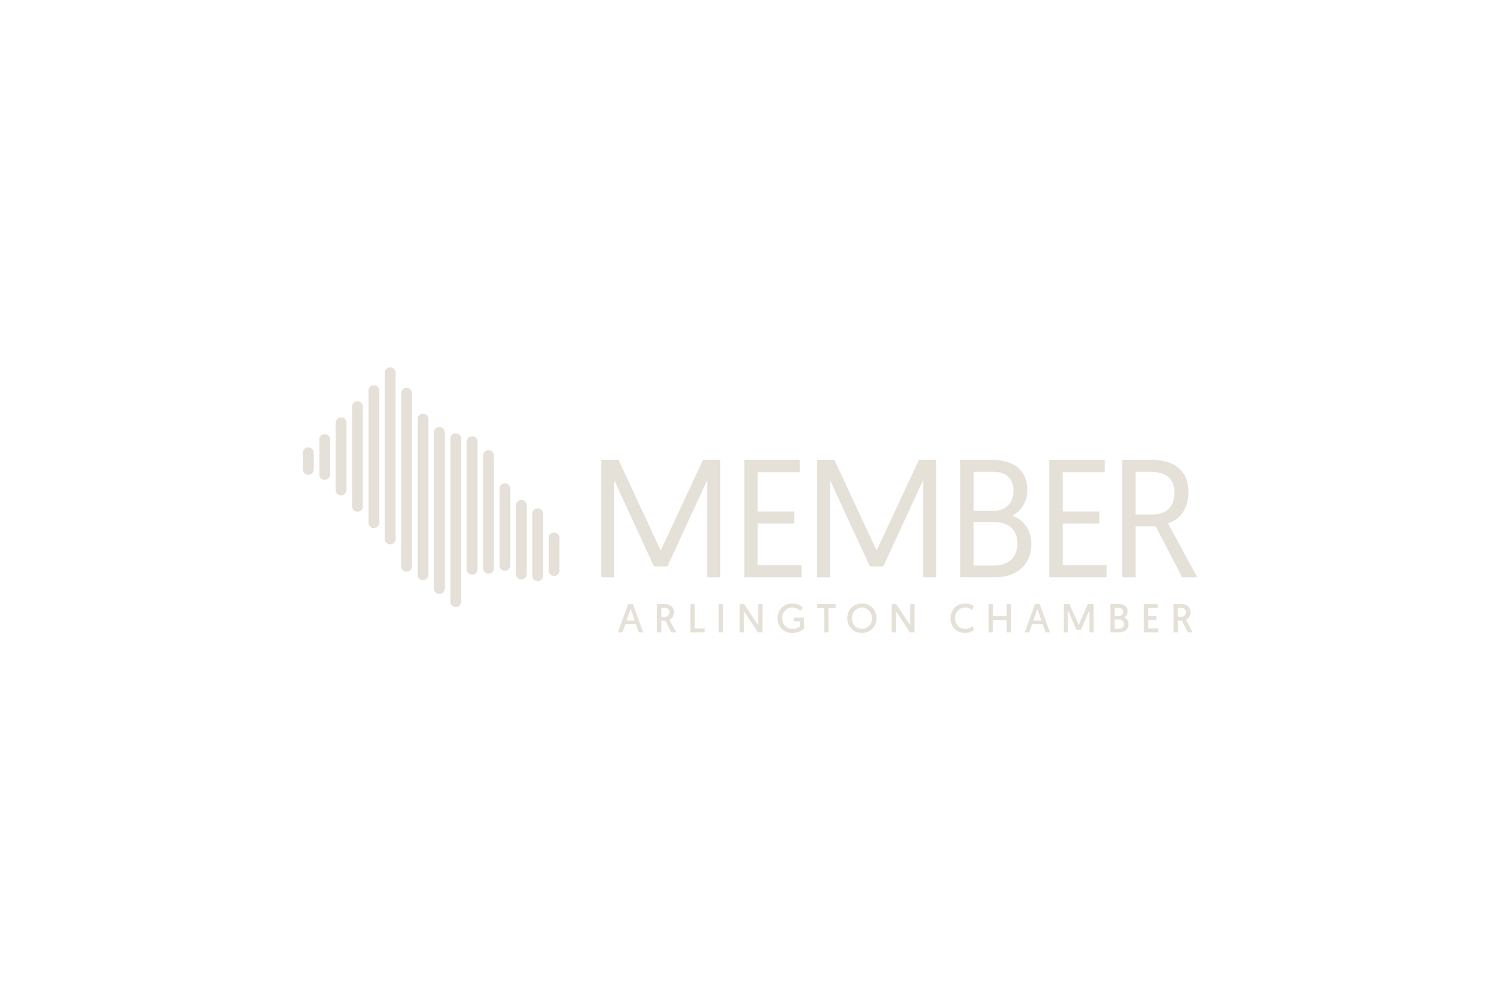 arlington-chamber-member-标志.png